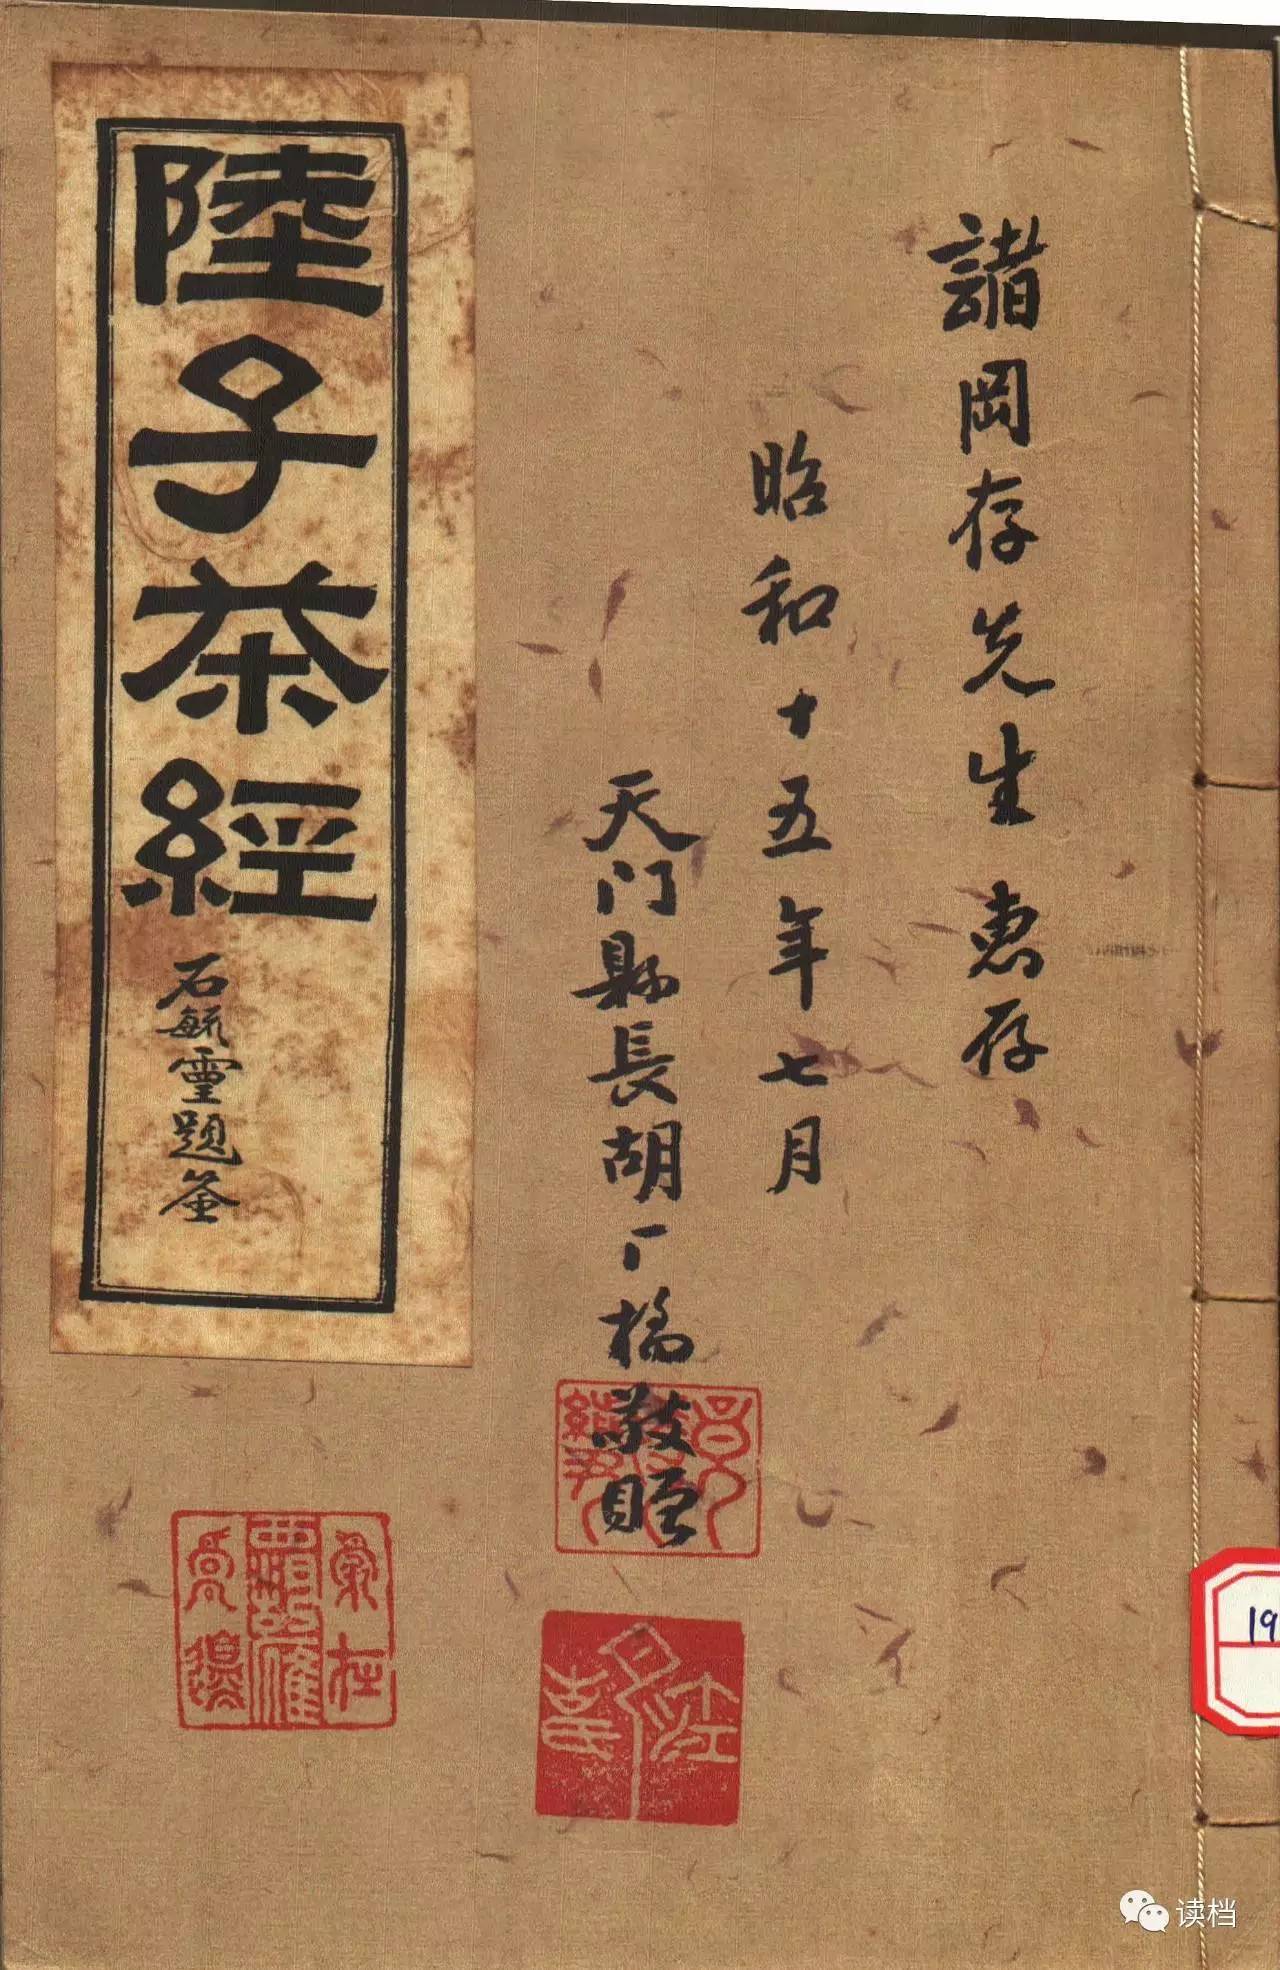 日本古写经集成--般若波罗密多心经 - 第3页 _心经书法_书法欣赏